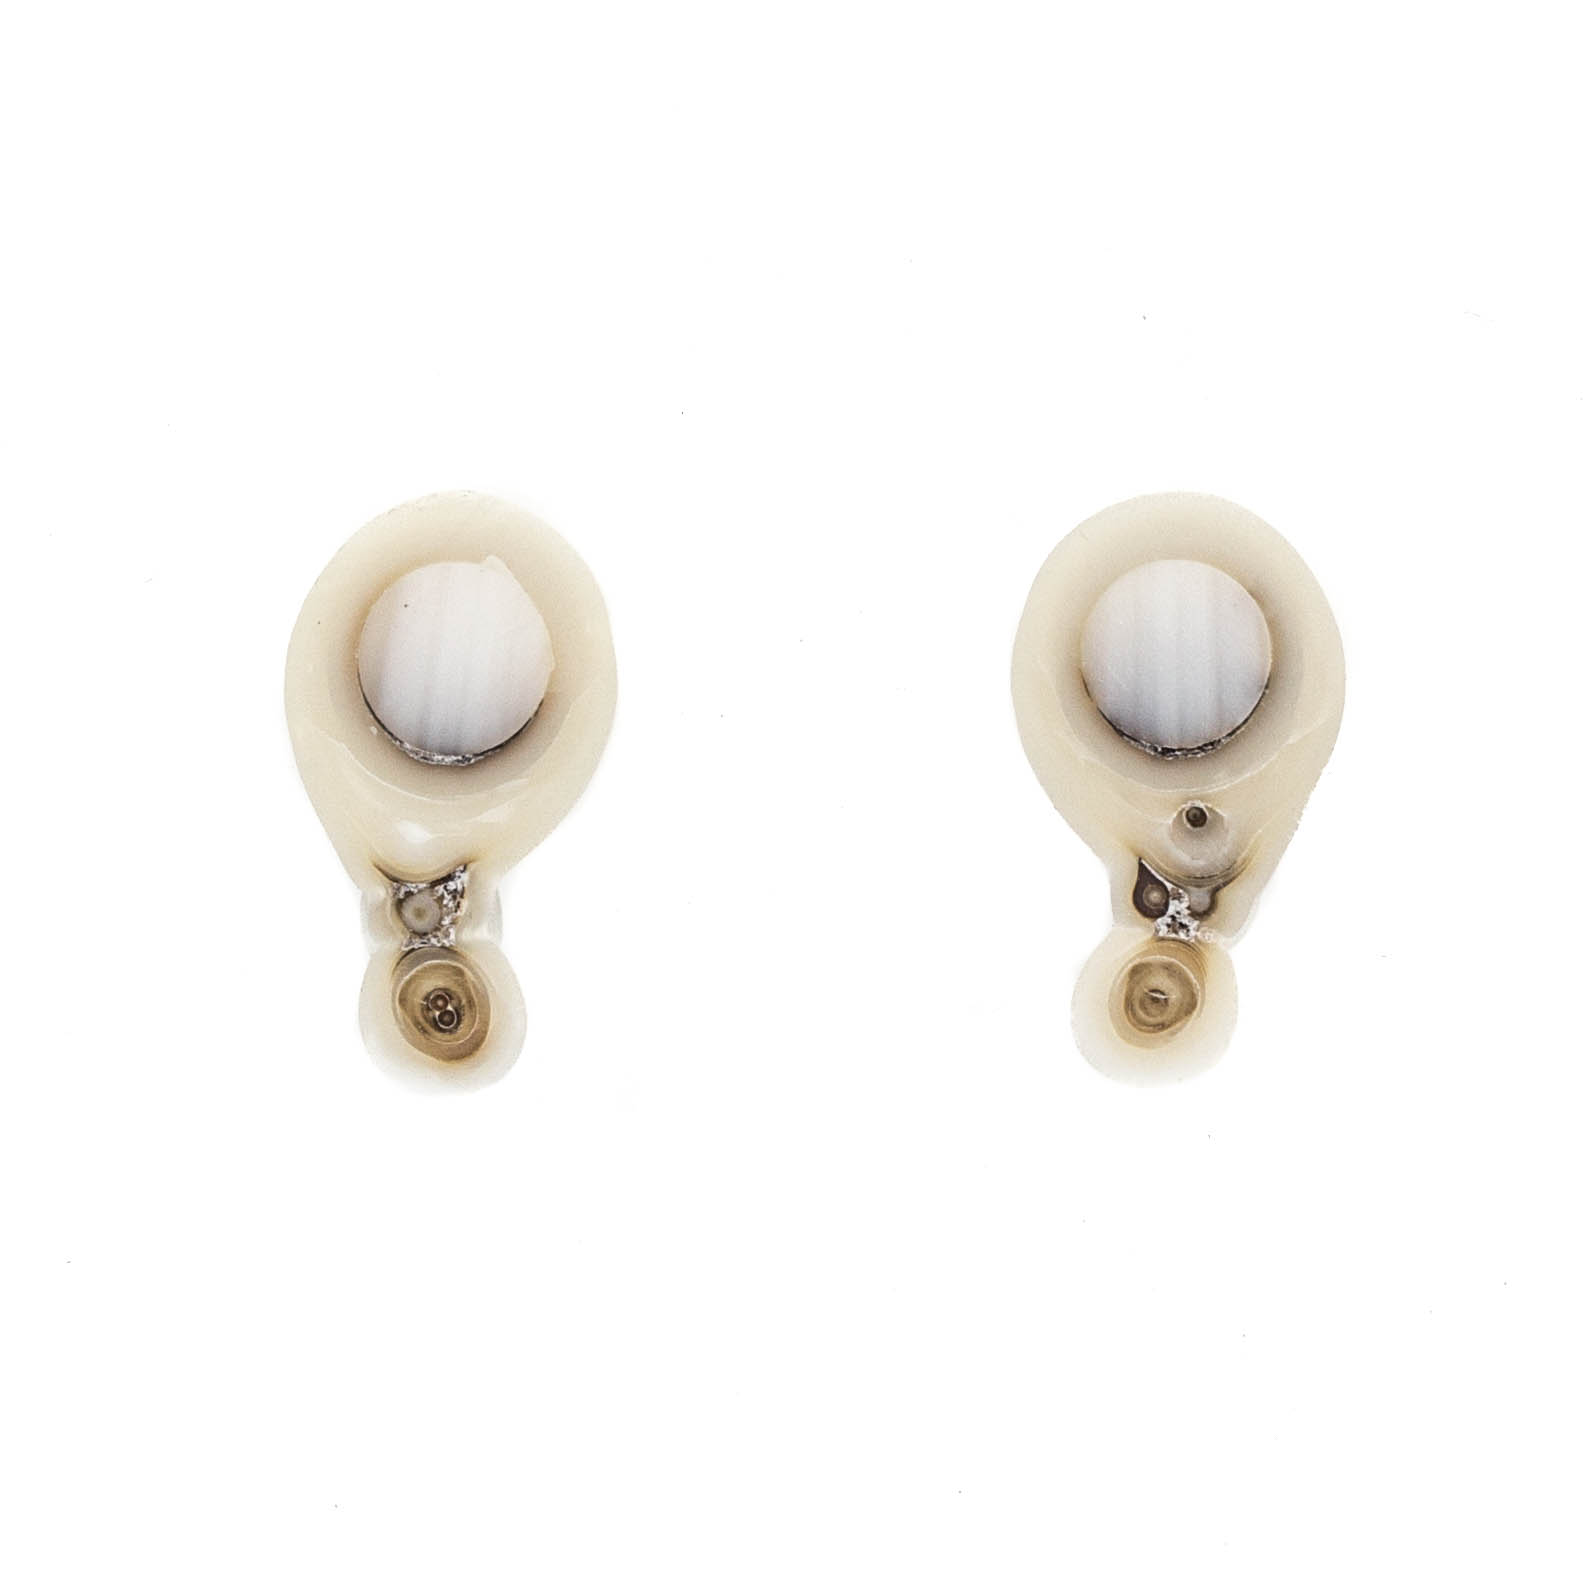 Australian South Sea Pearl Post Earrings